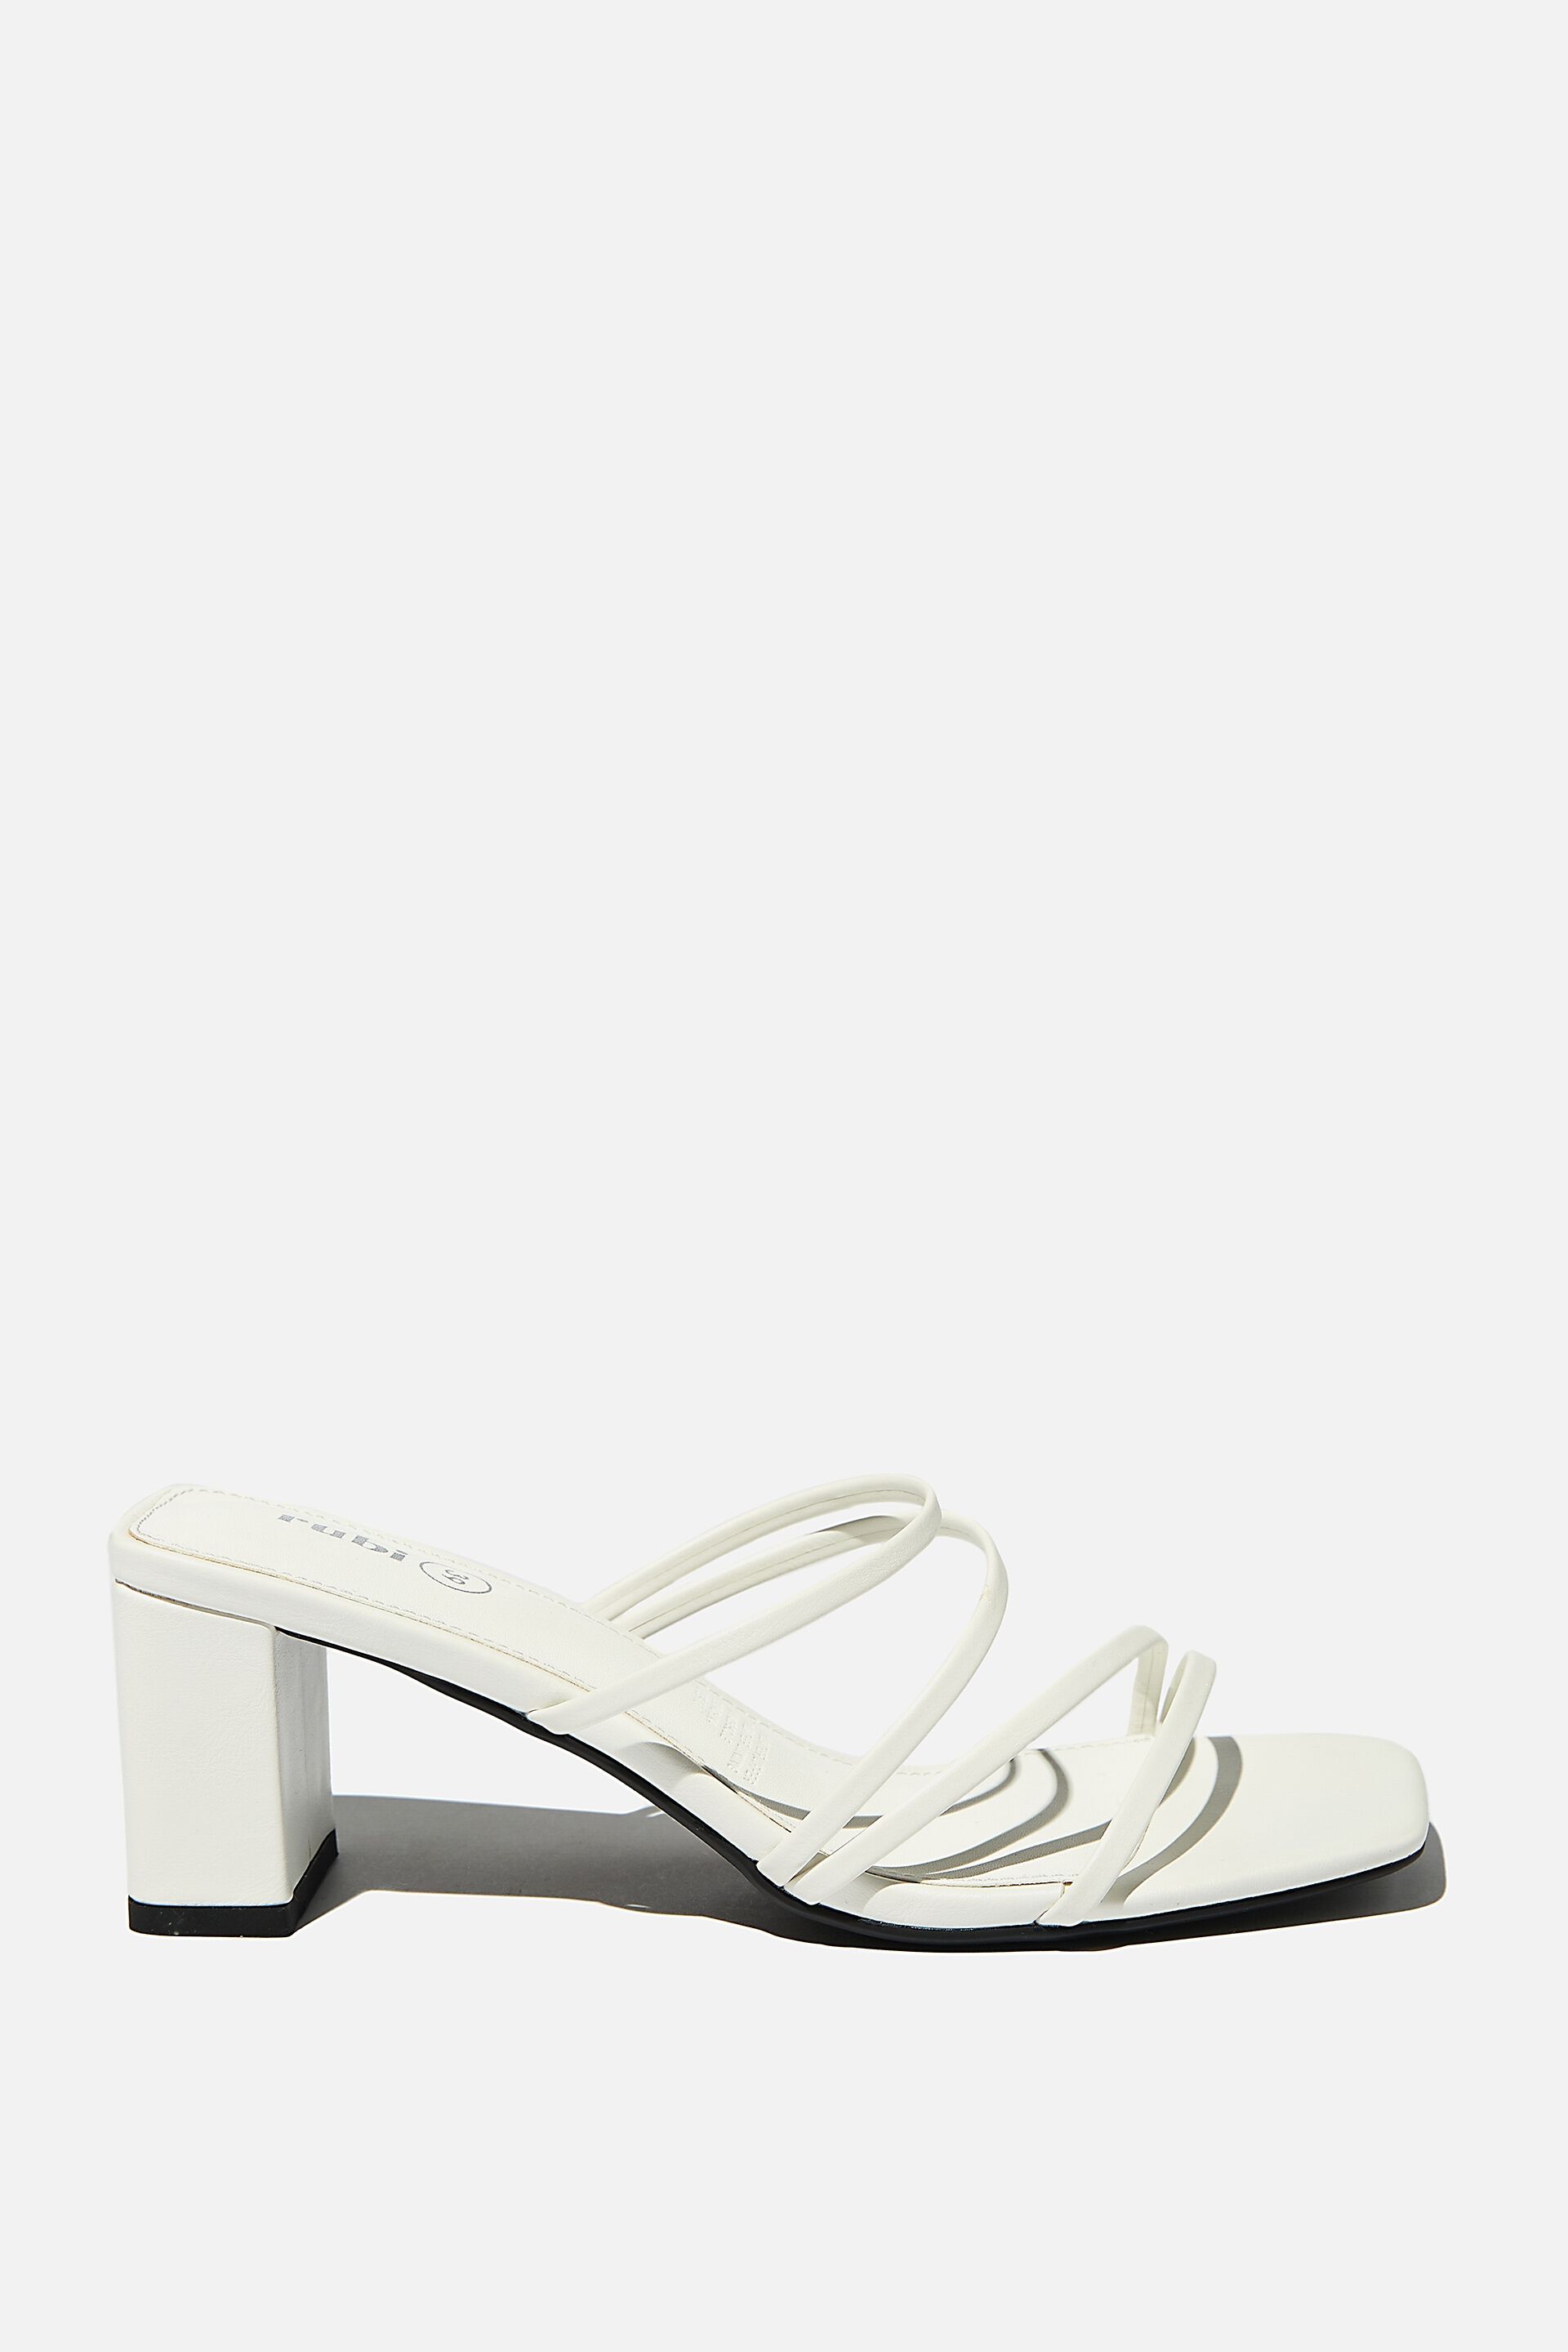 white one strap heels